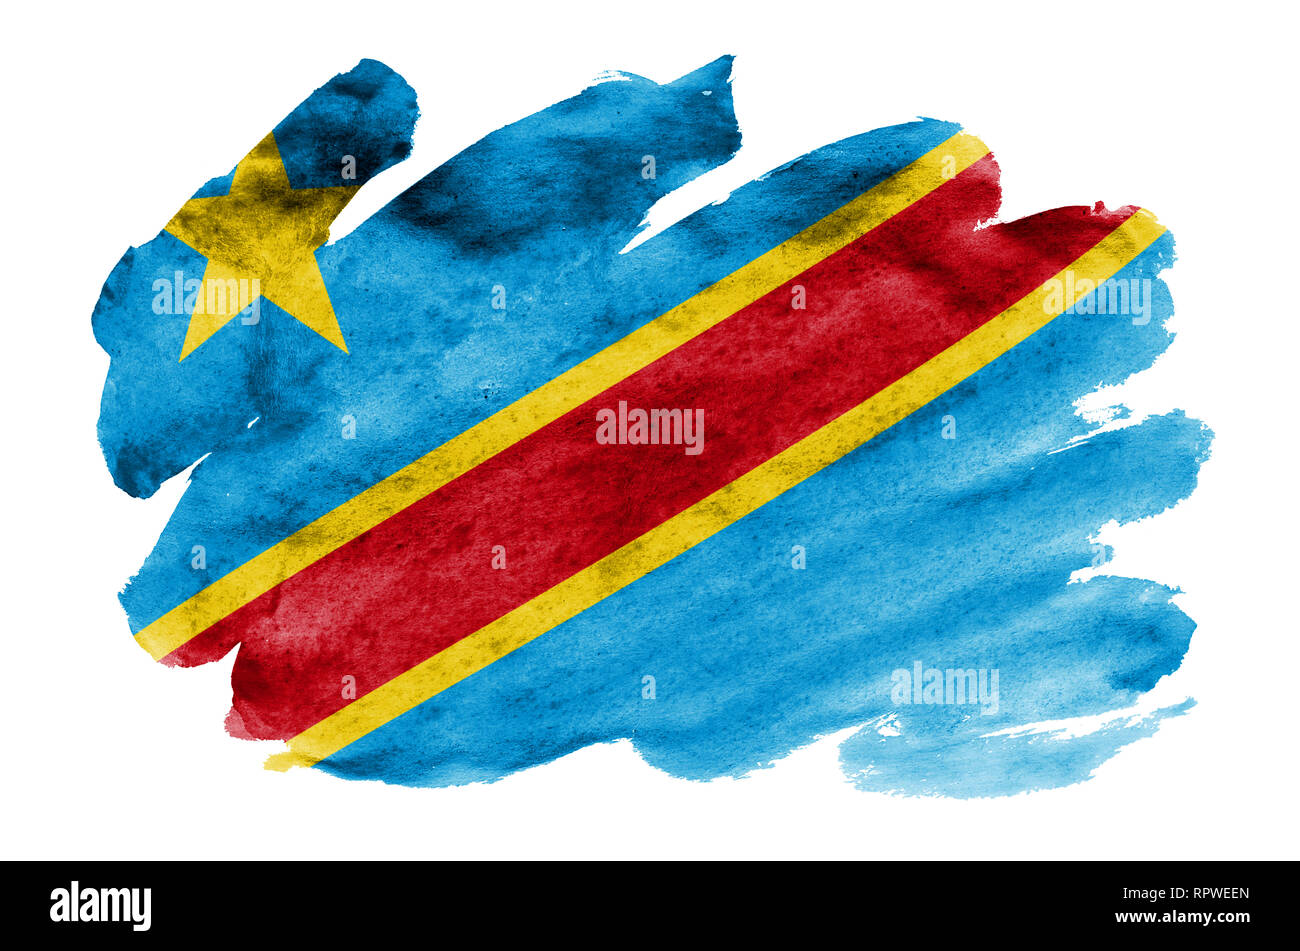 Demokratische Republik Kongo Flagge ist in flüssiger Aquarell Stil auf weißem Hintergrund dargestellt. Unvorsichtige Farbe Beschattung mit Bild des Natio Stockfoto